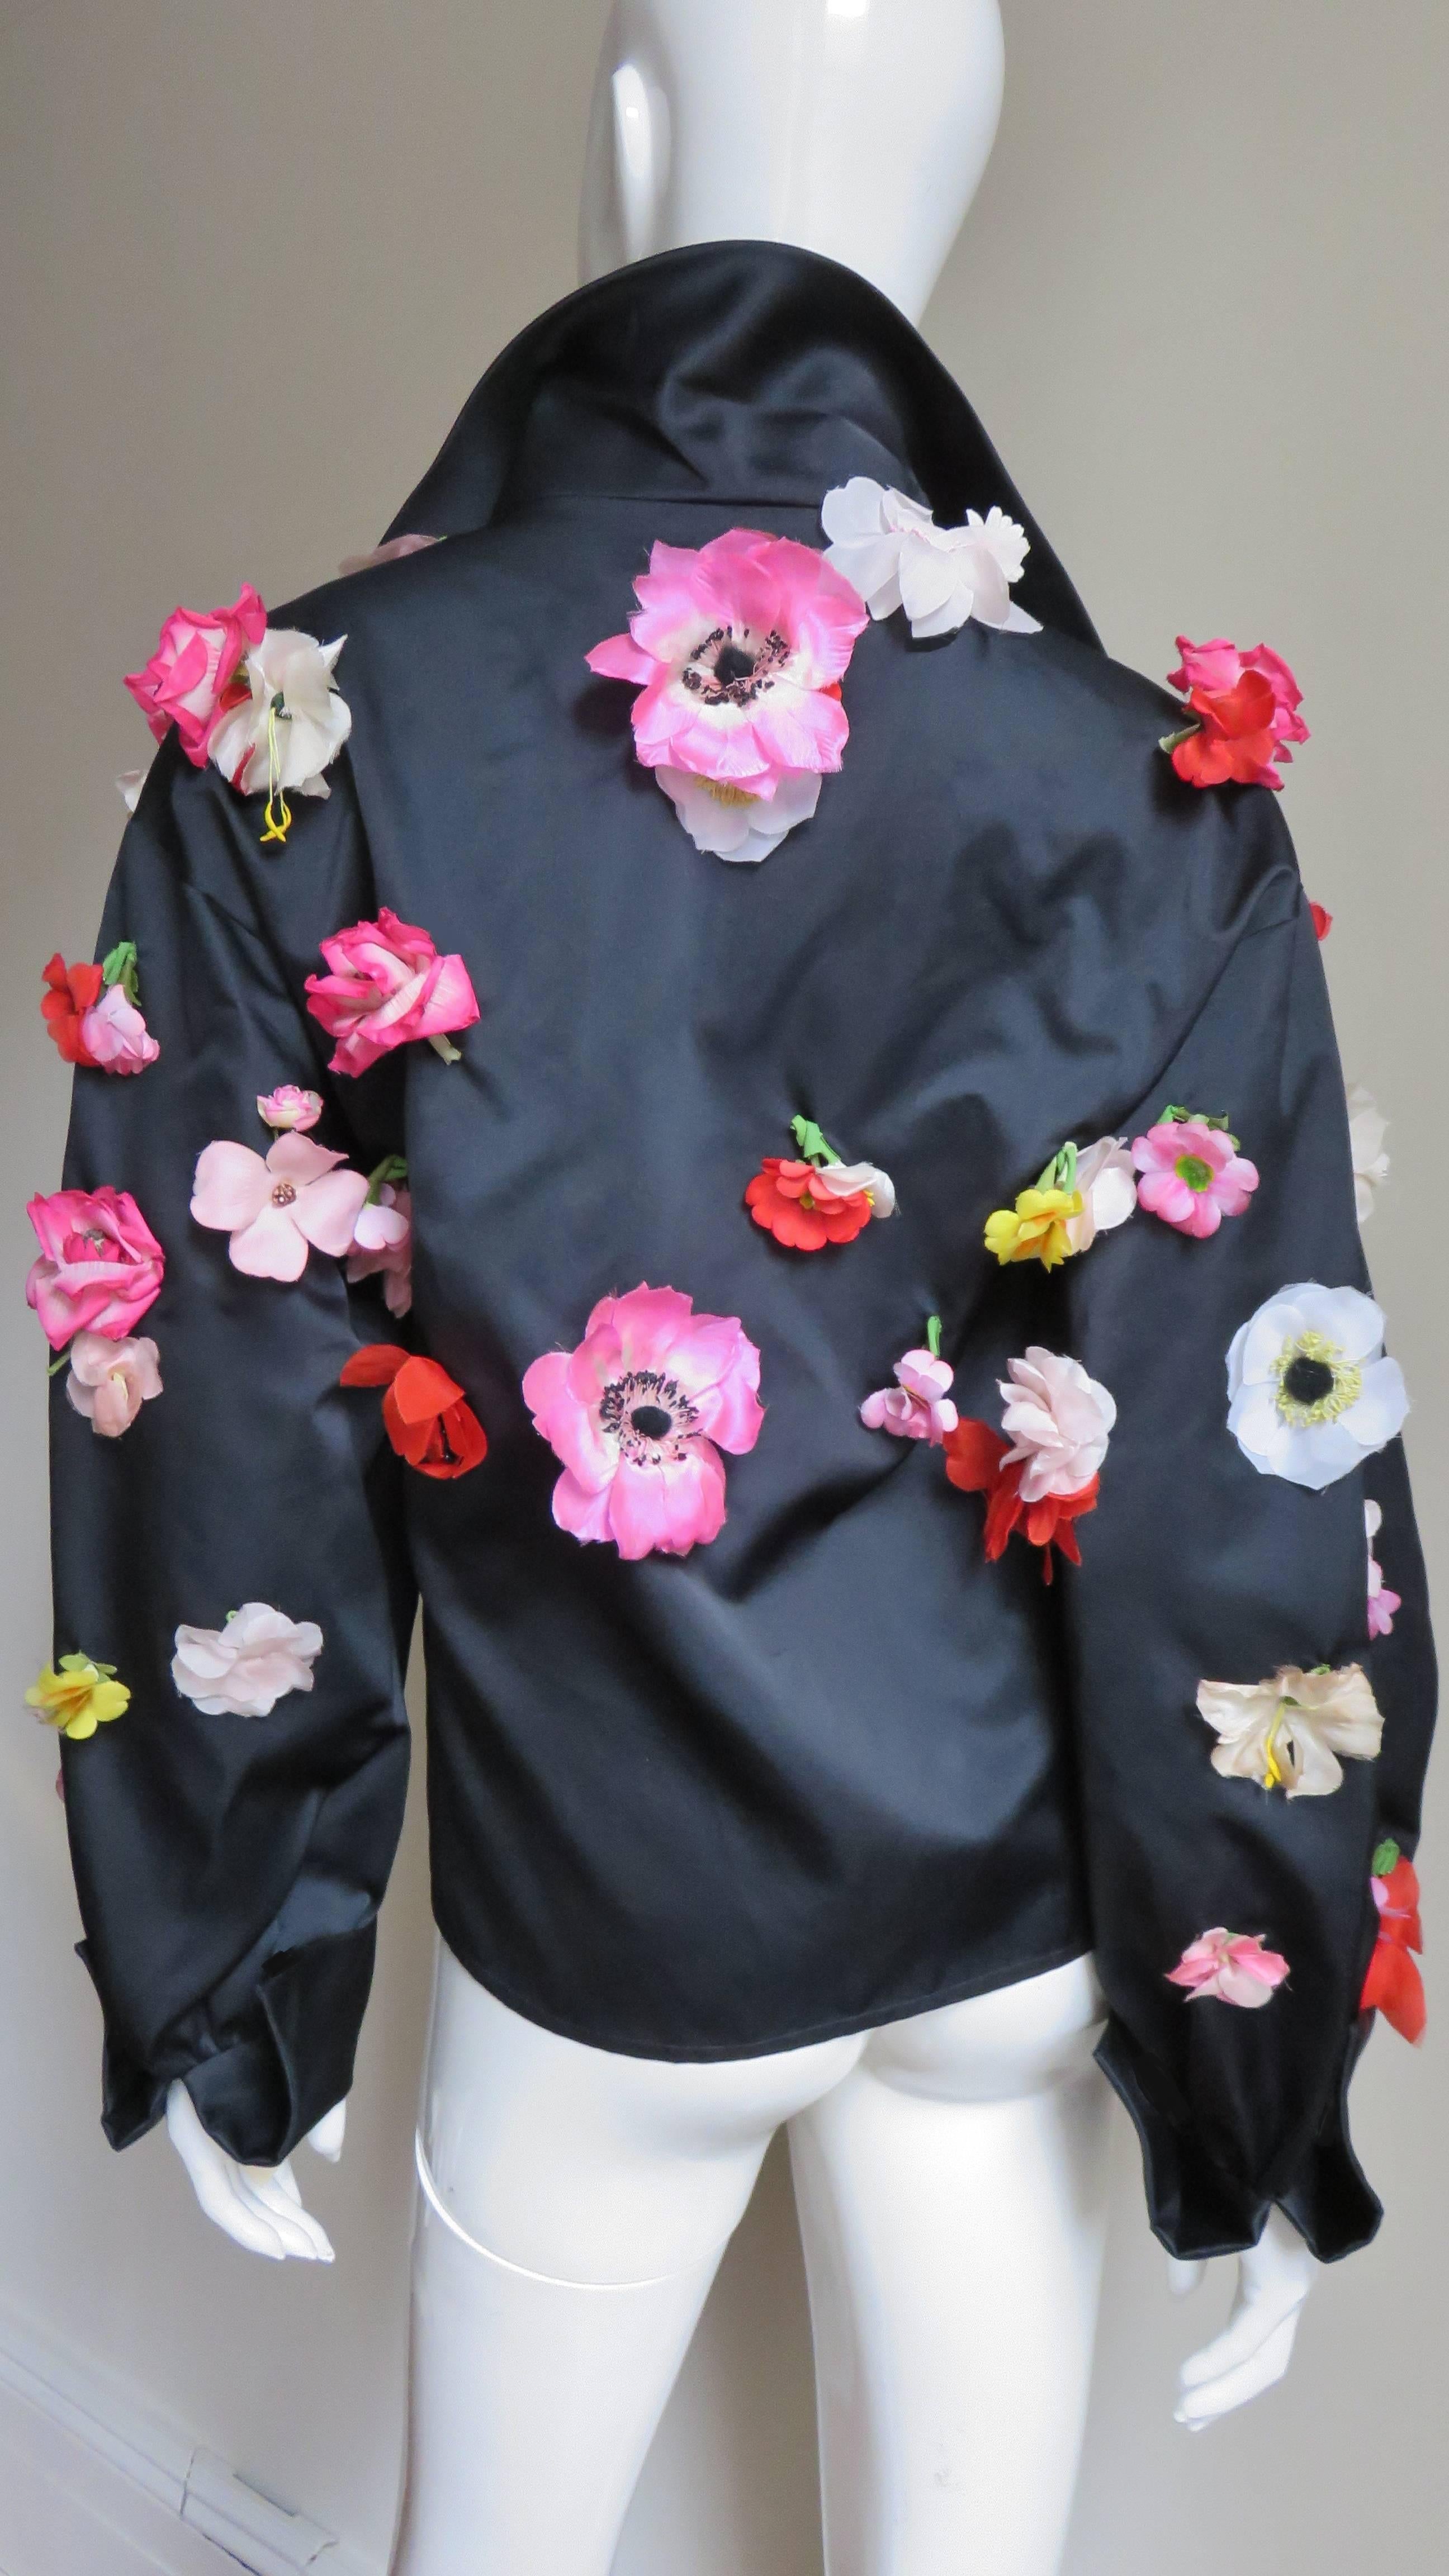  Bill Blass New 1970s Flower Applique Jacket 5